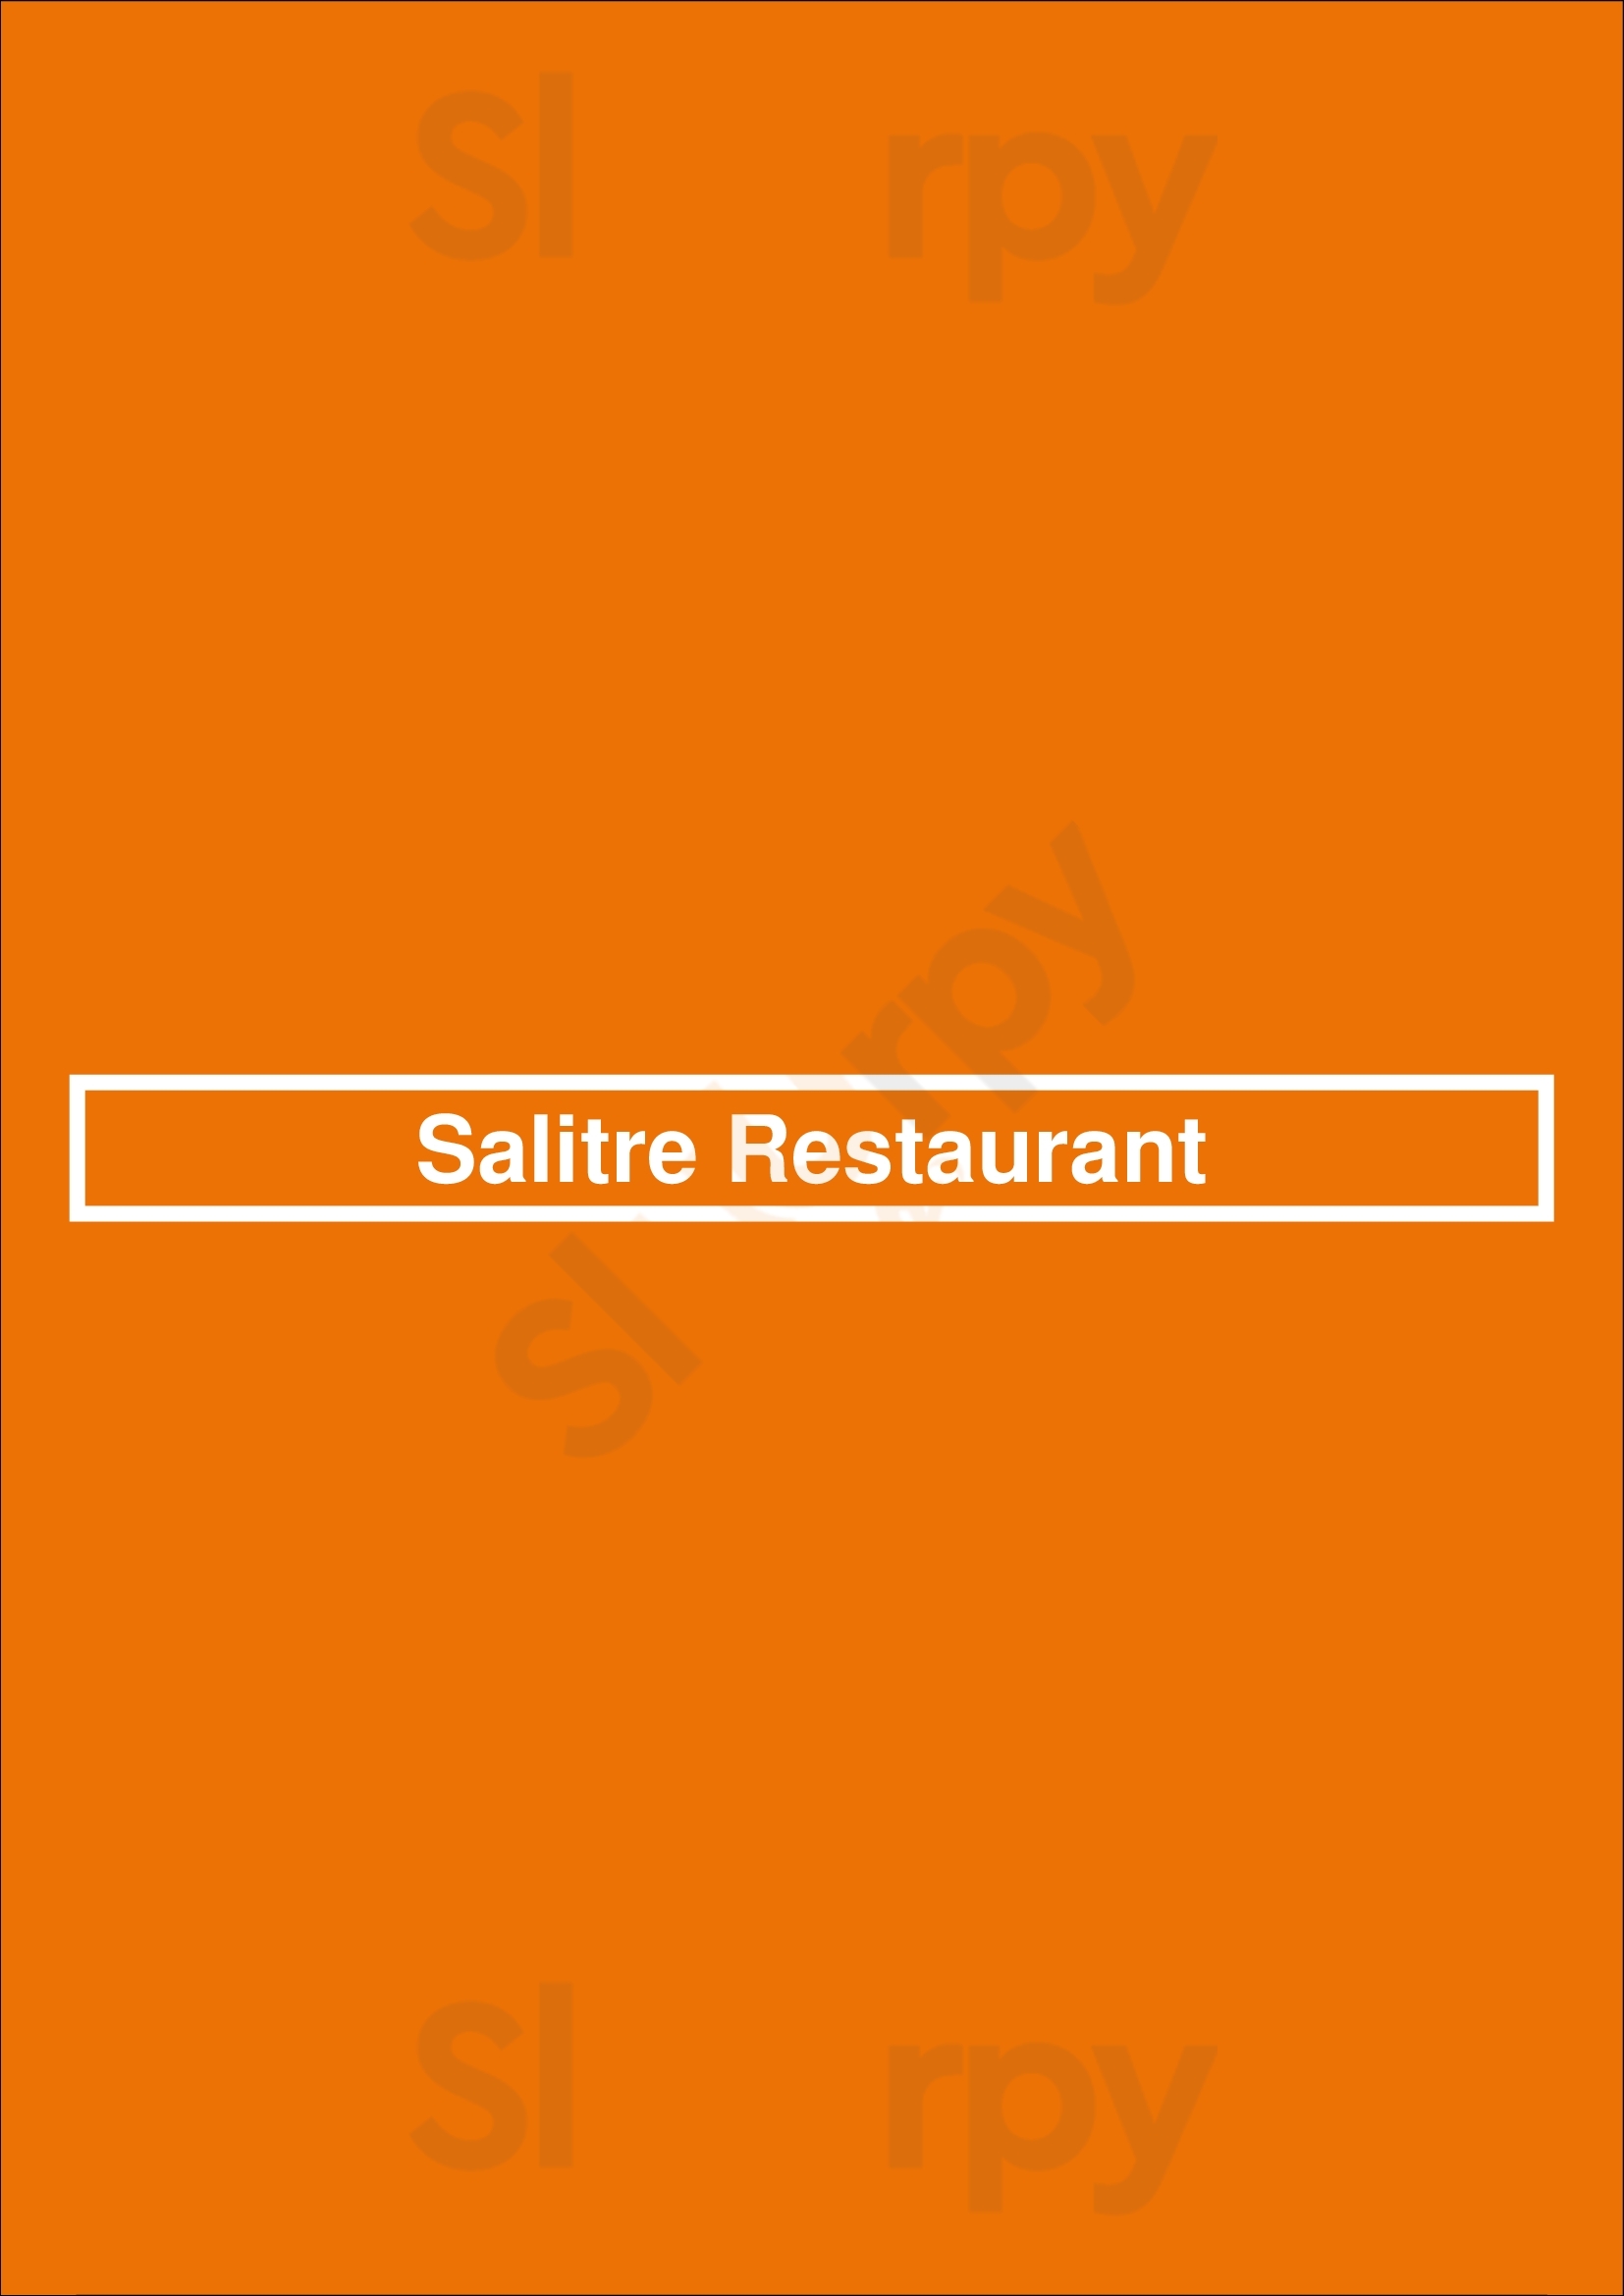 Salitre Restaurant Schiller Park Menu - 1